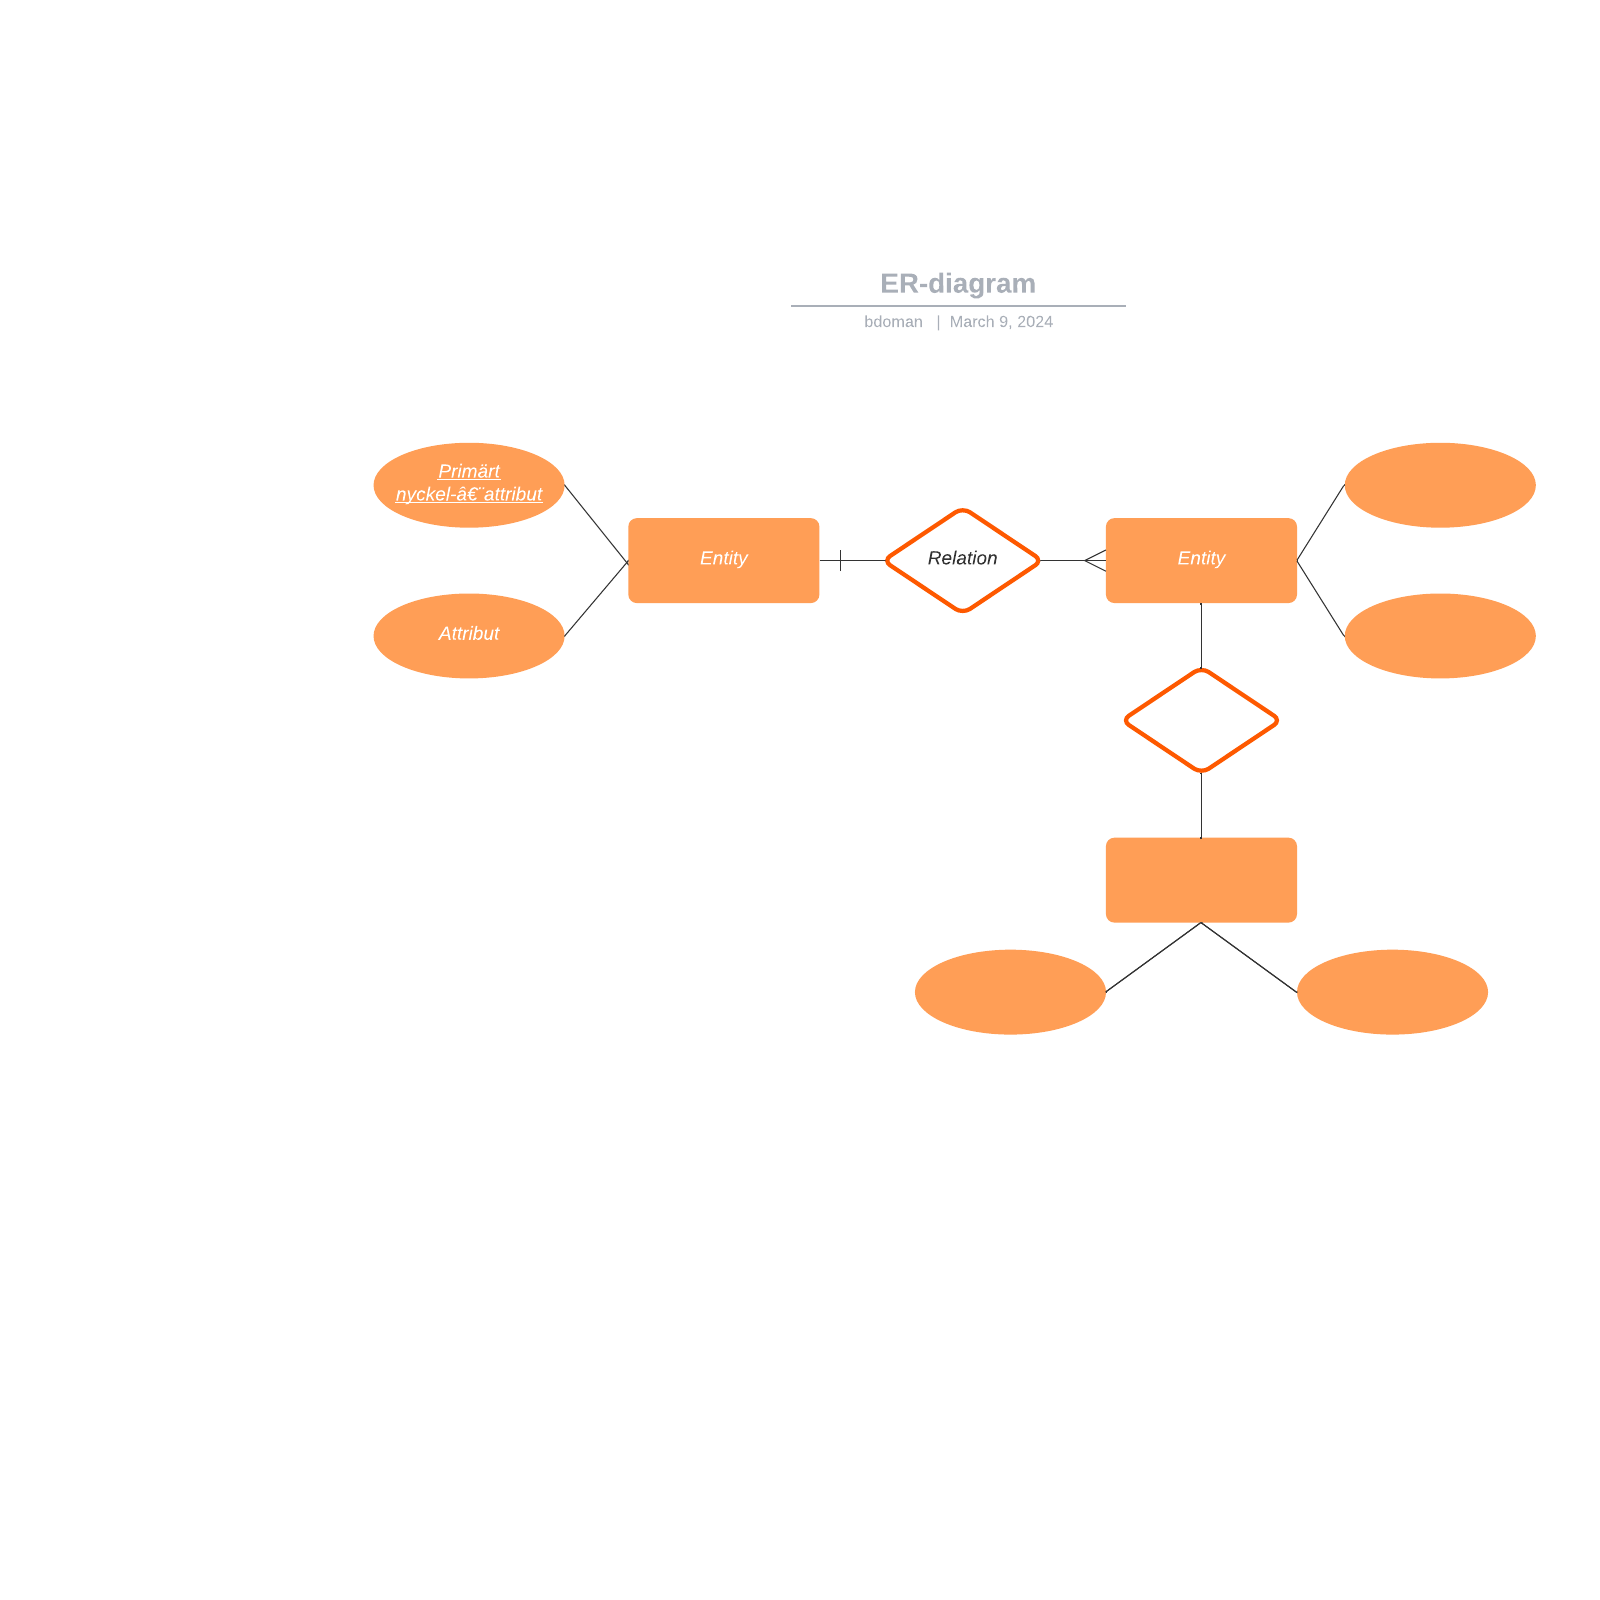 ER-diagram example